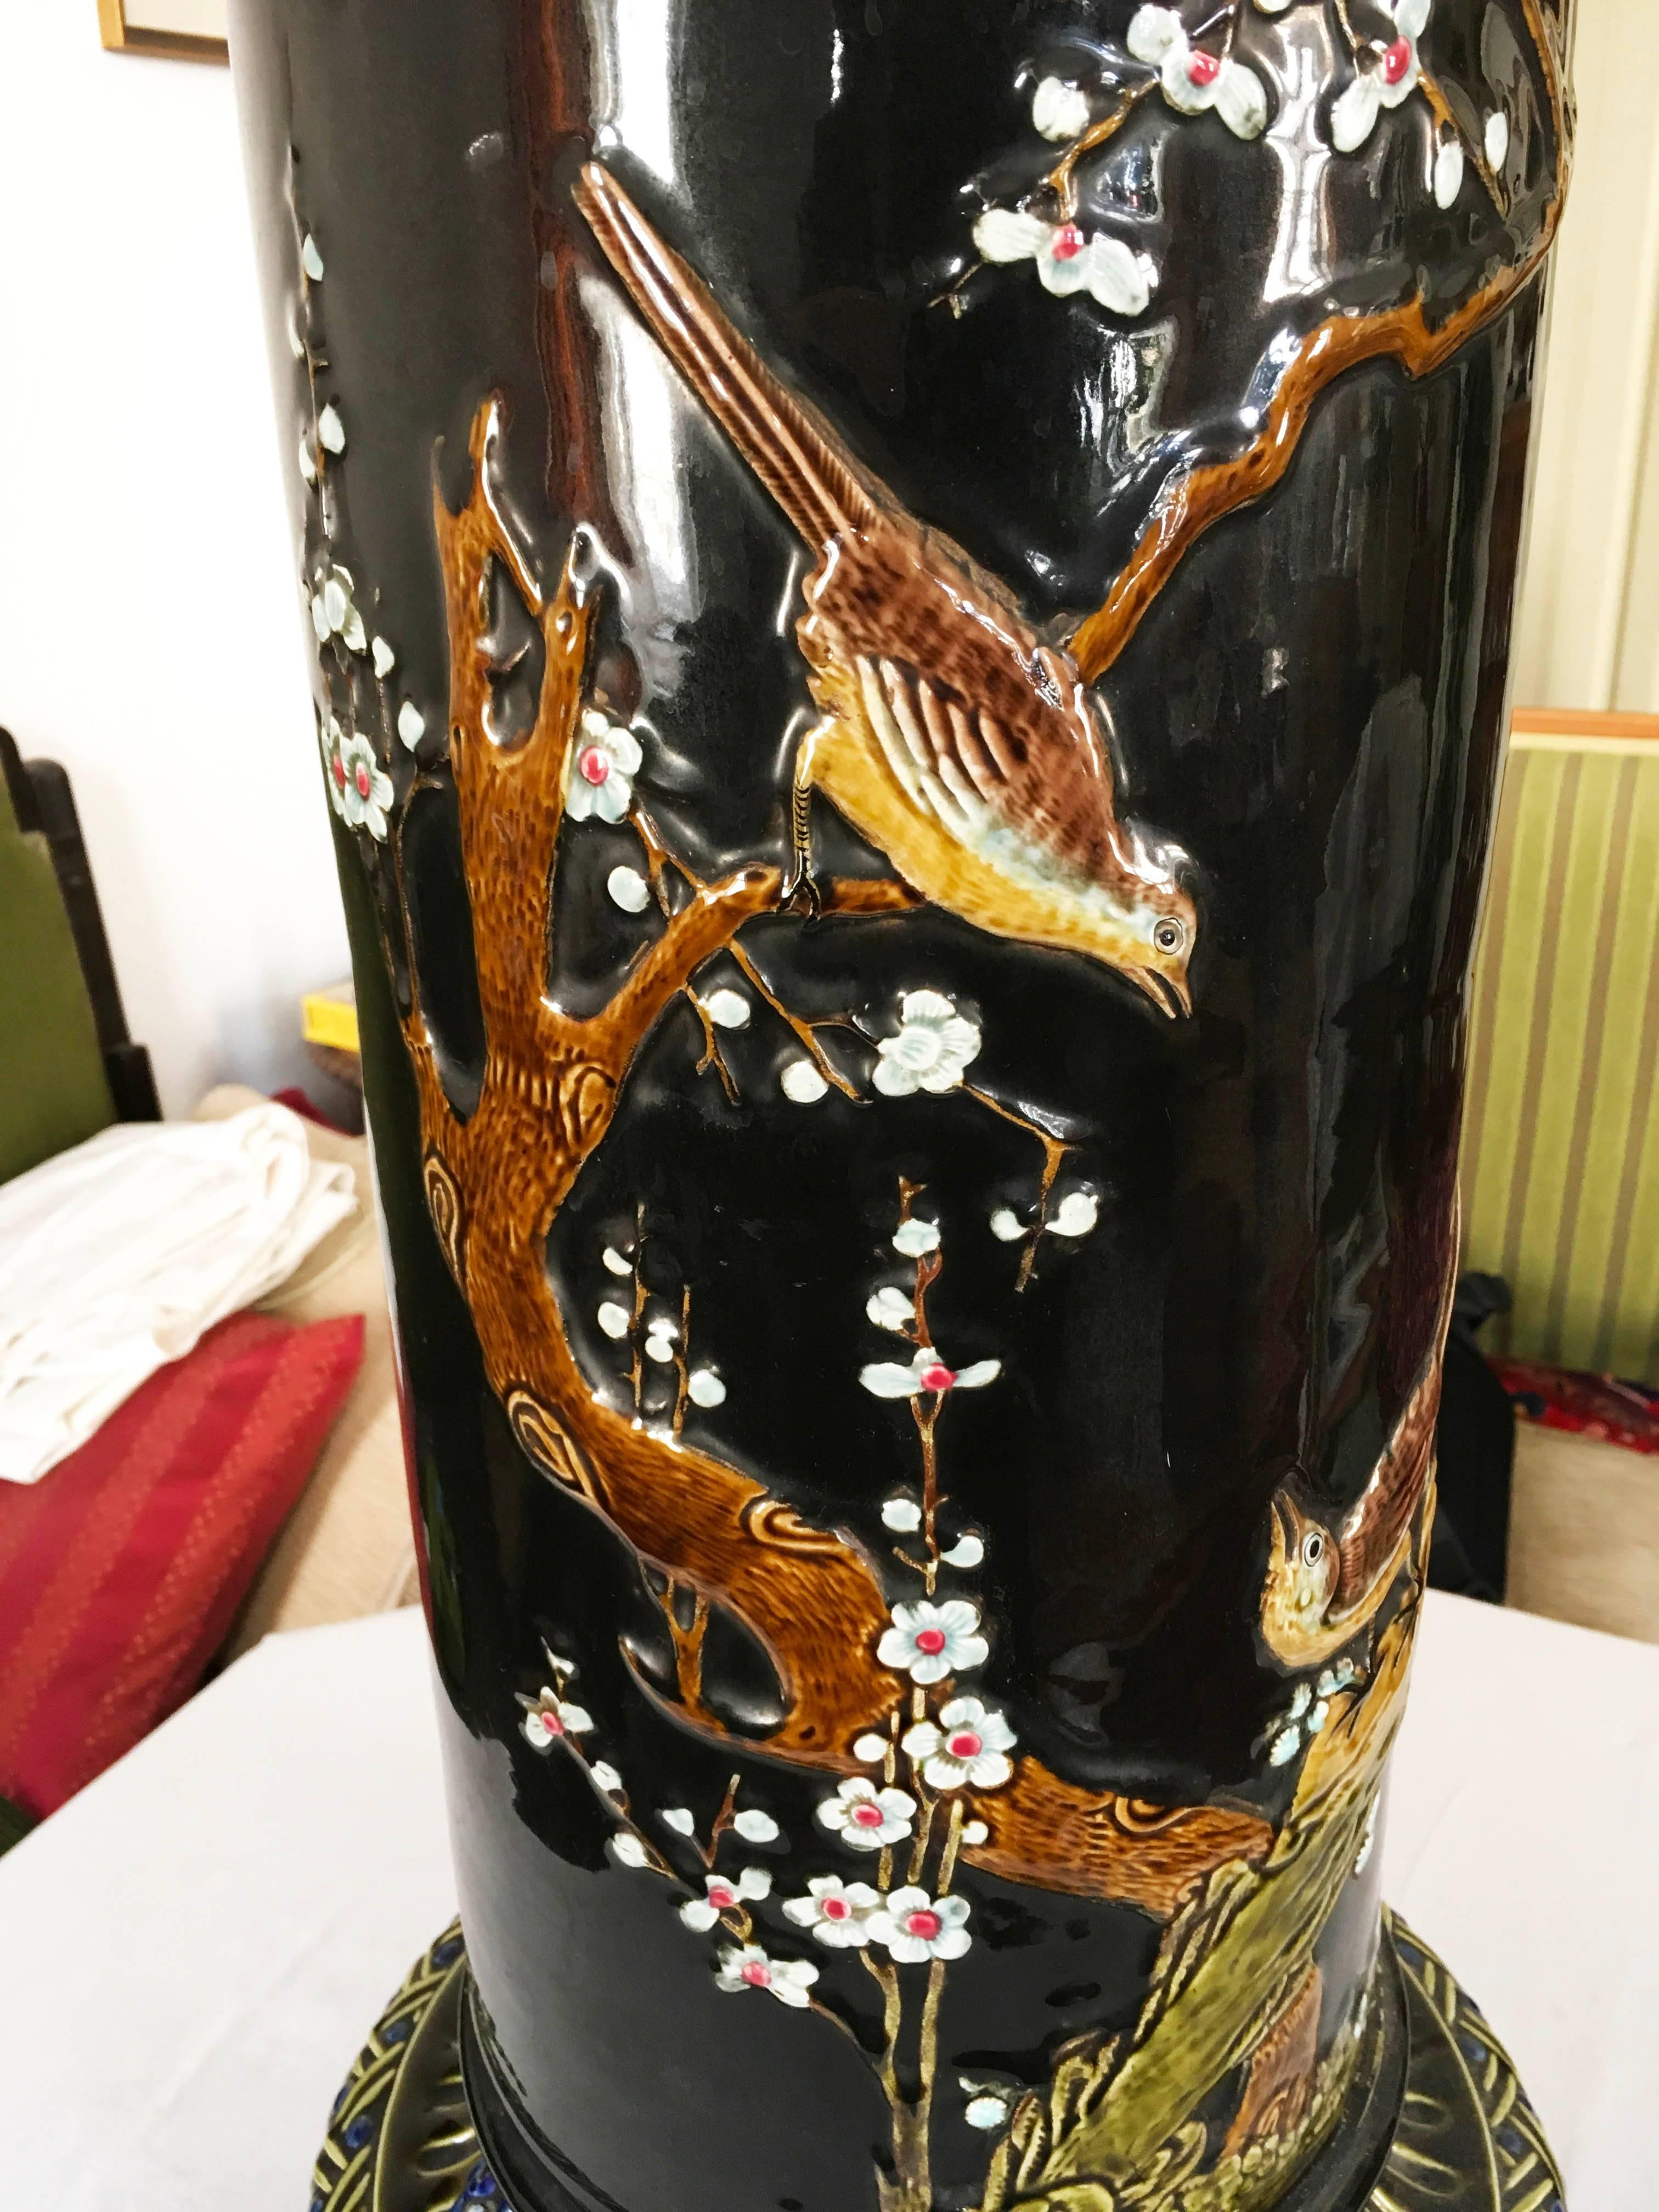 Riesige Säule, Sockel oder Blumenständer mit asiatischen Motiven. Hergestellt in den 1950er Jahren in Asien (Japan?)
Maße: Höhe: 92 cm.
Durchmesser: 40 cm.
etwa 30 kg.